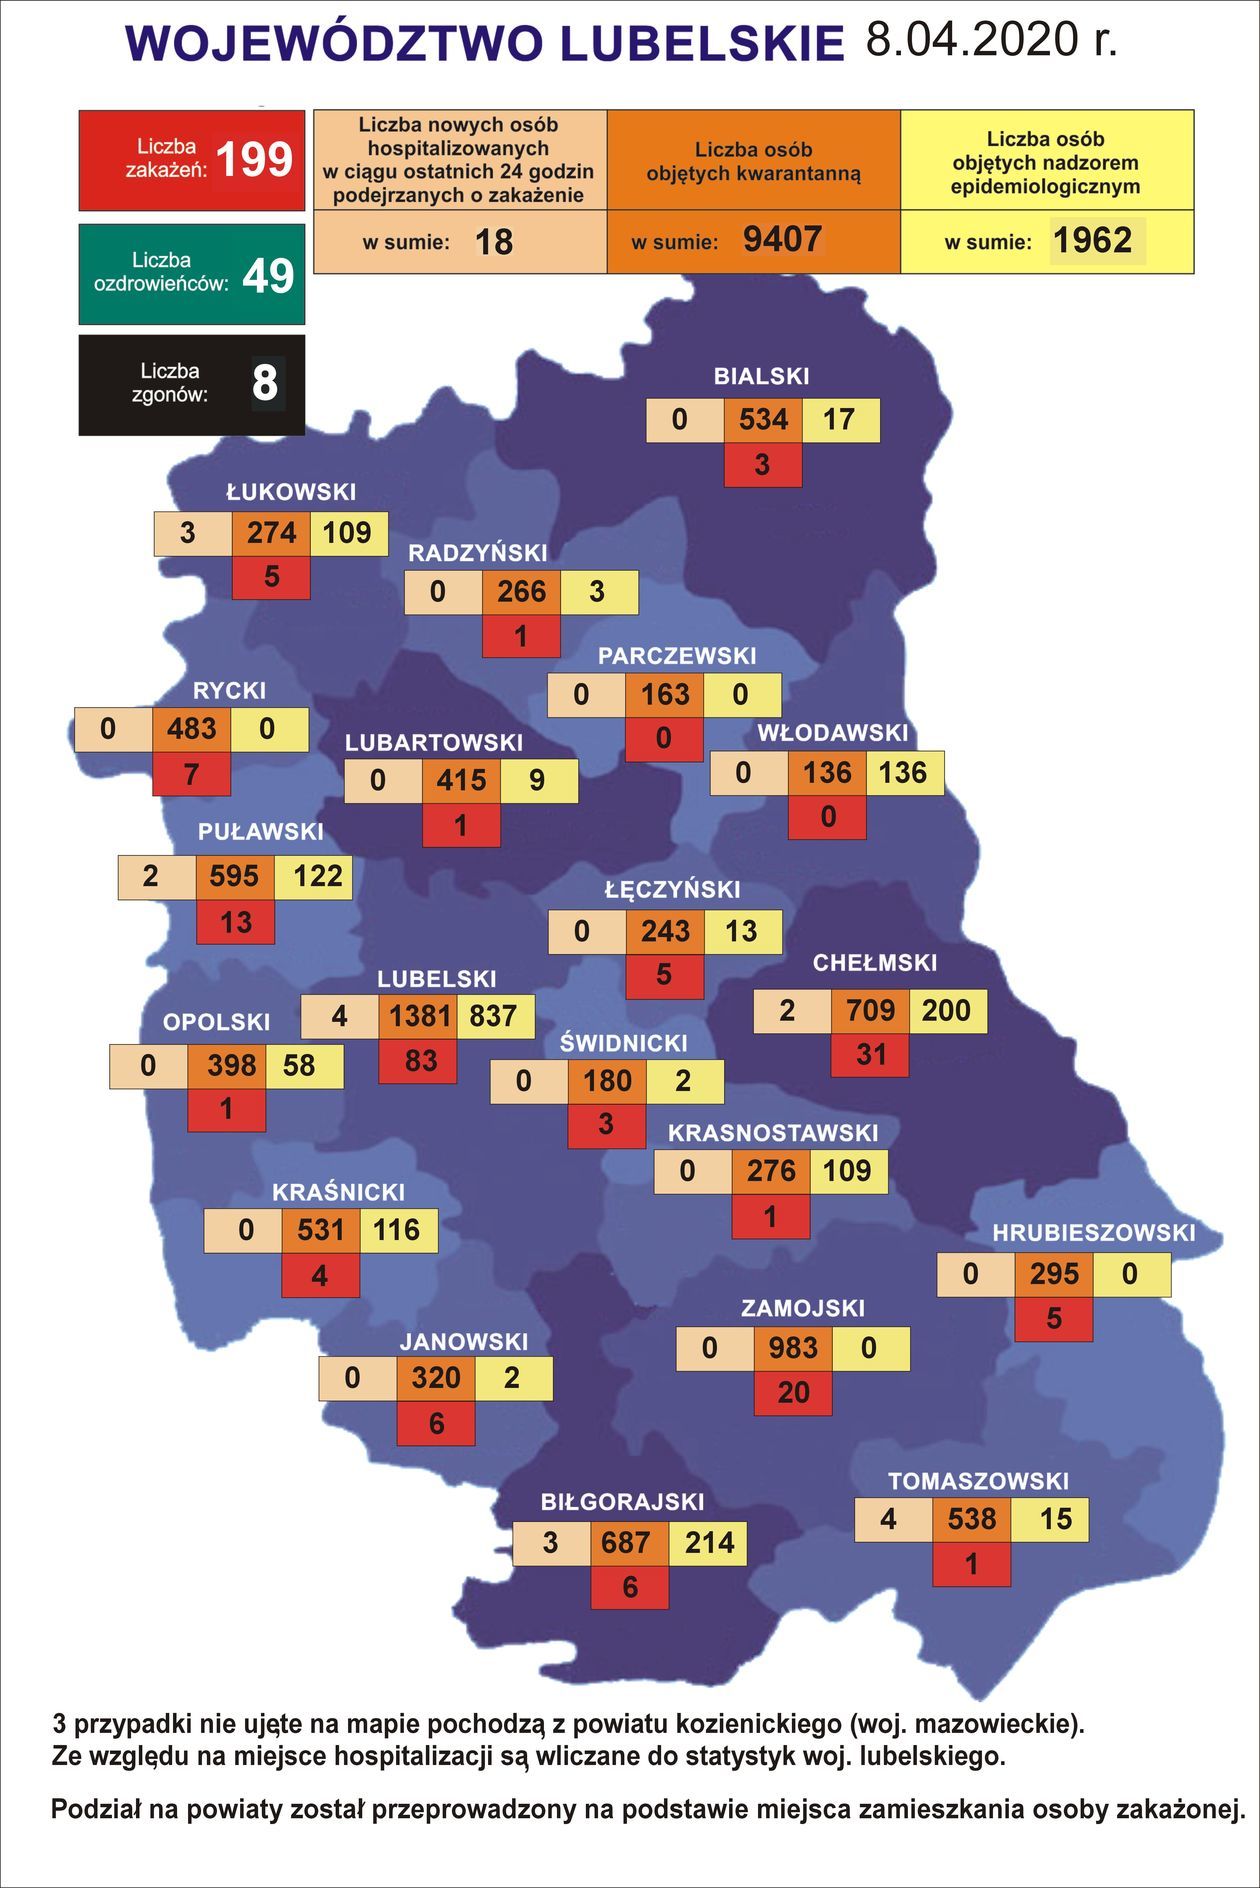 Koronawirus w woj. lubelskim - dane statystyczne [8 kwietnia 2020]